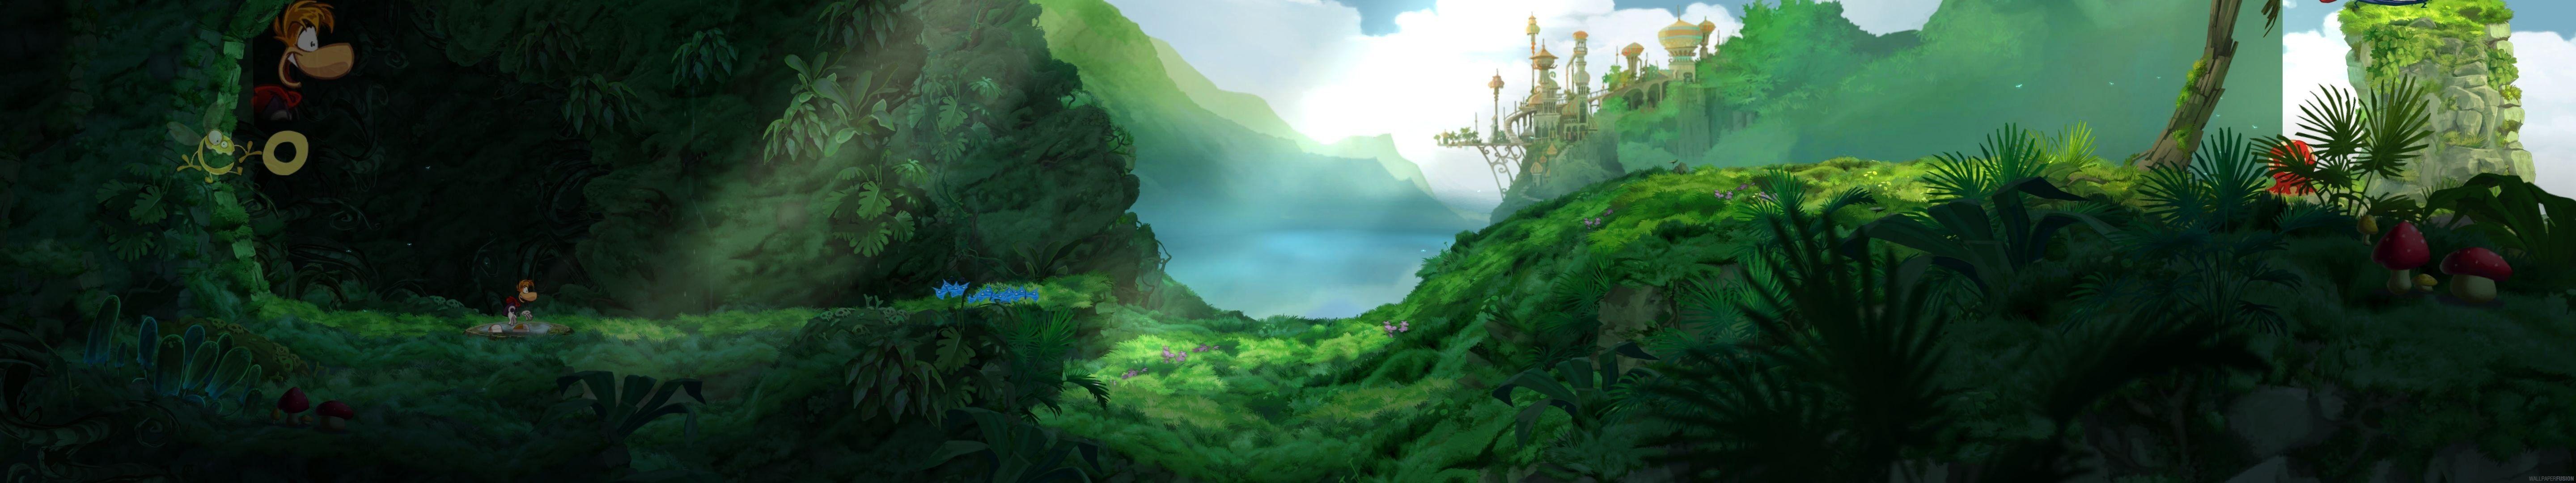 Zelda Dual Screen Wallpapers - Top Free Zelda Dual Screen Backgrounds